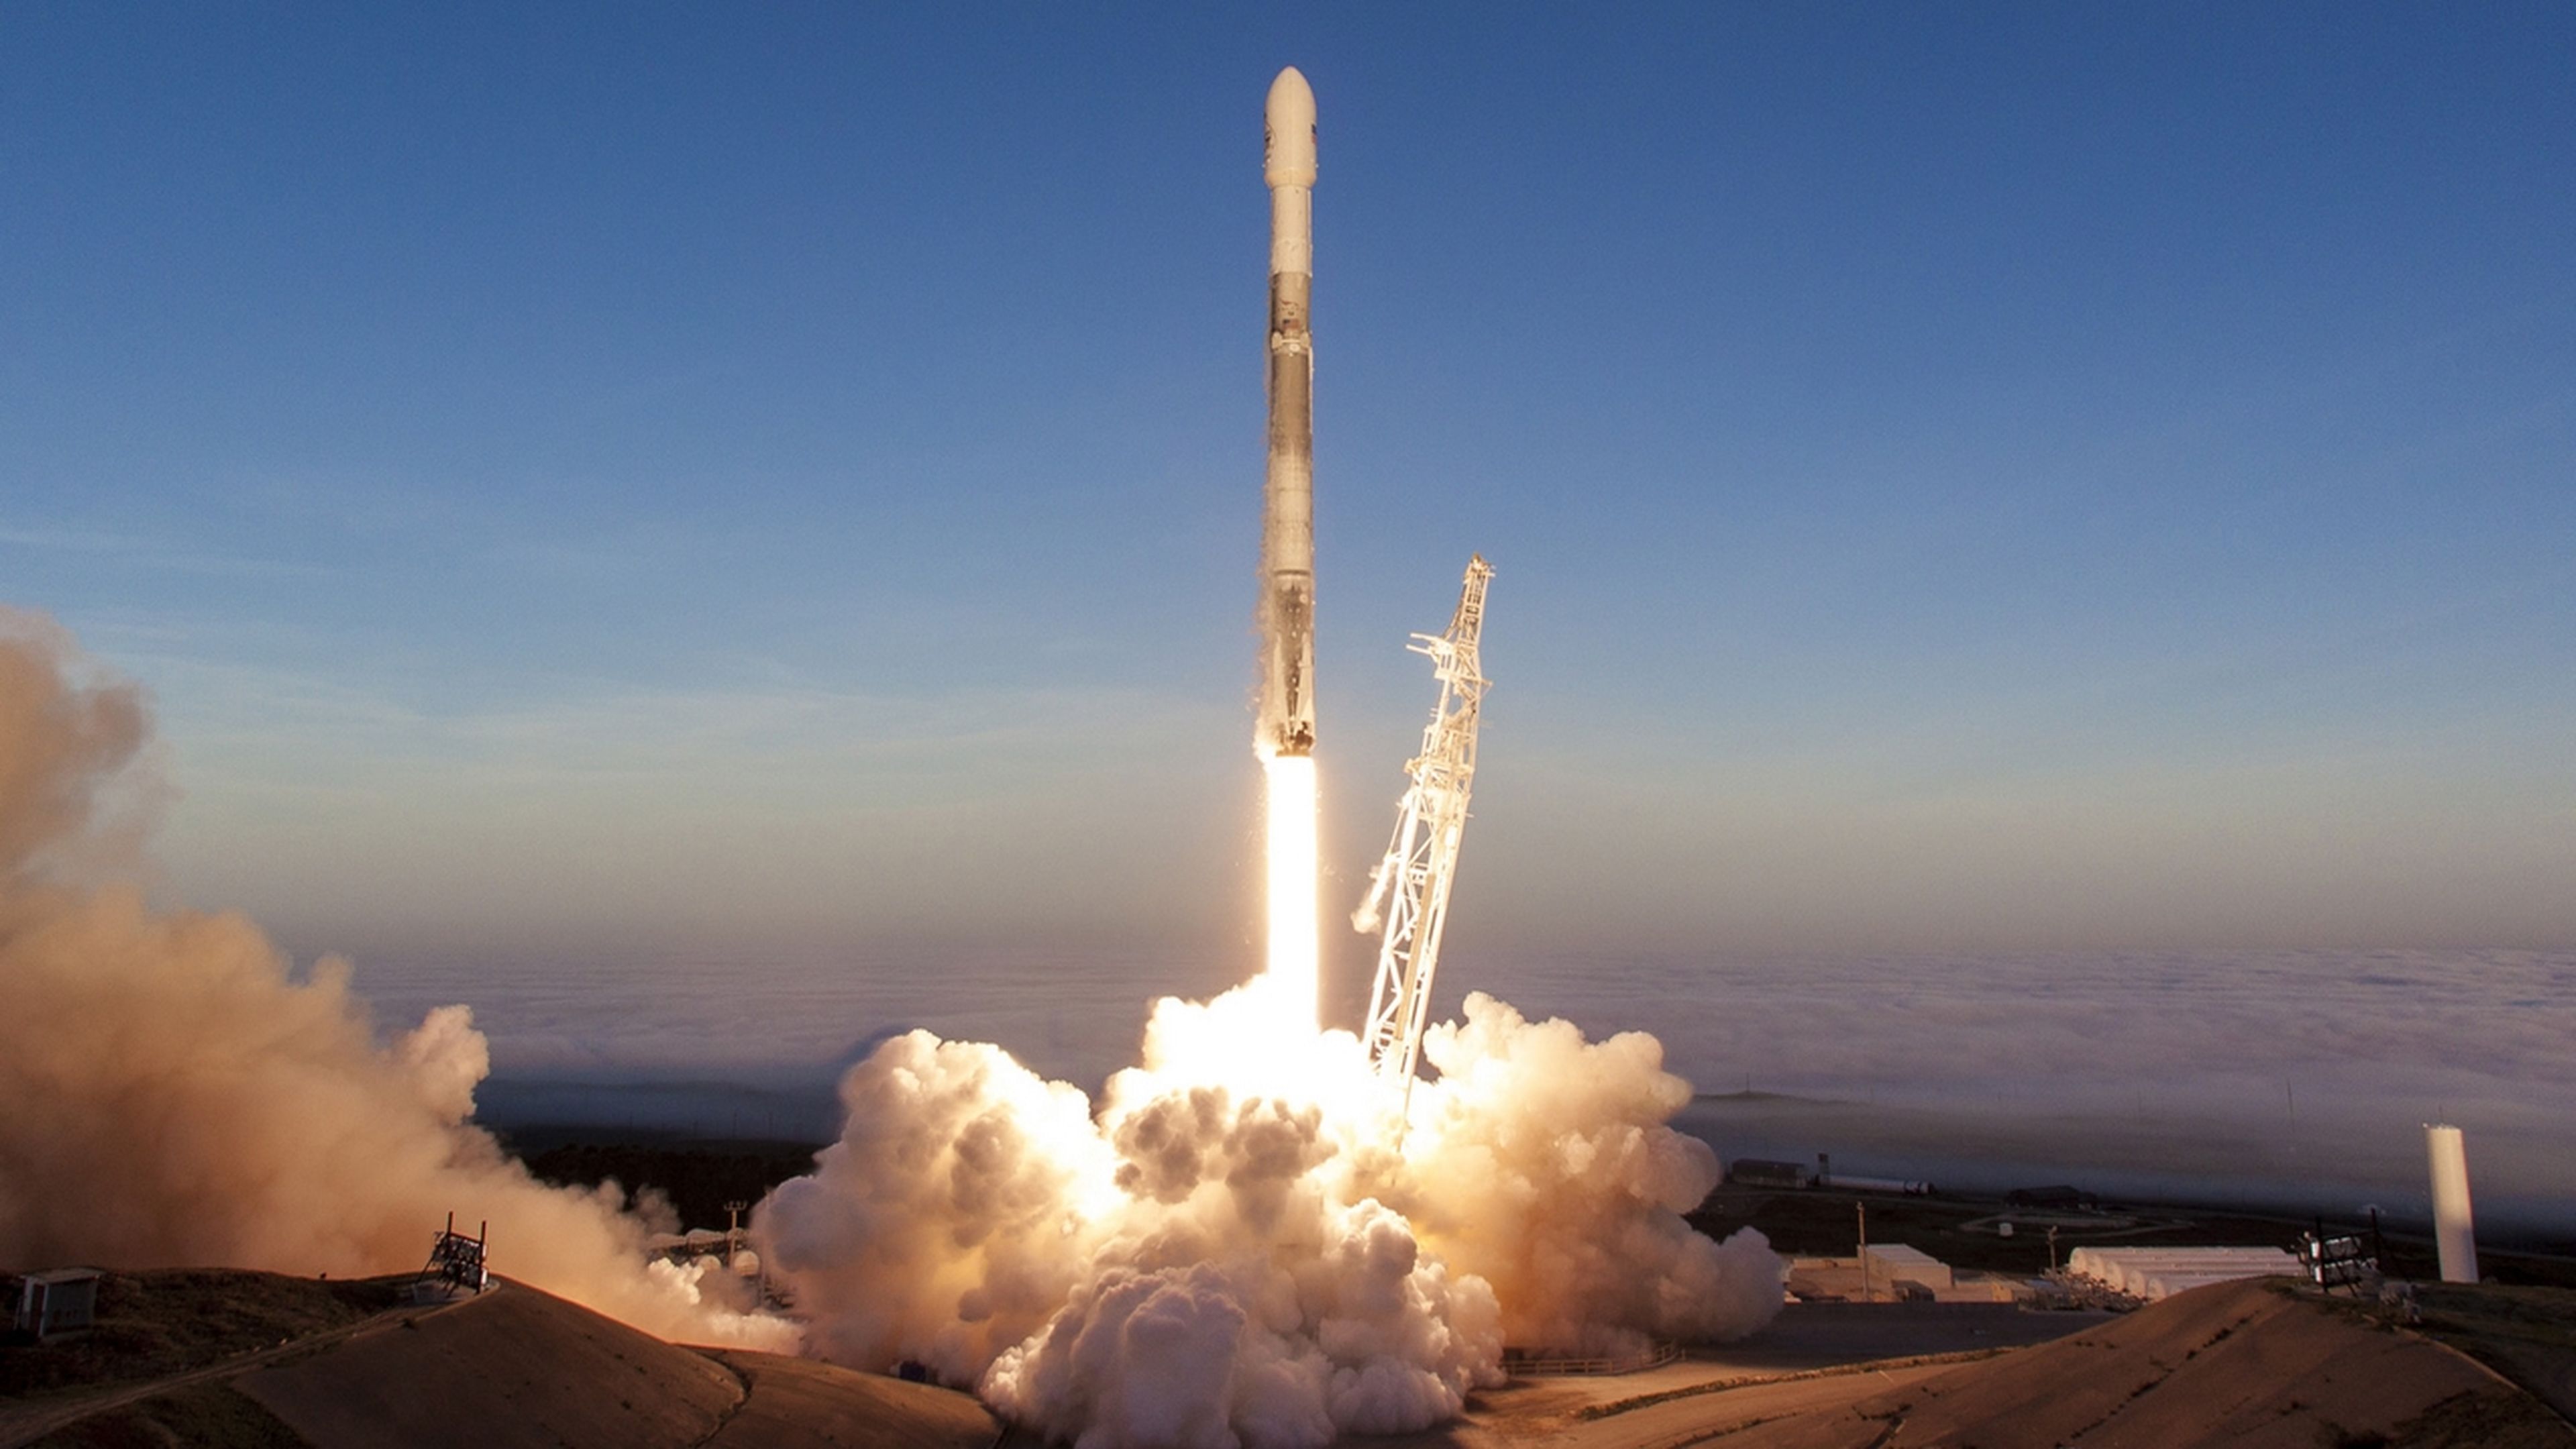 El retraso del cohete Ariane 6 obliga a Europa a contratar a SpaceX para poner en órbita sus satélites 